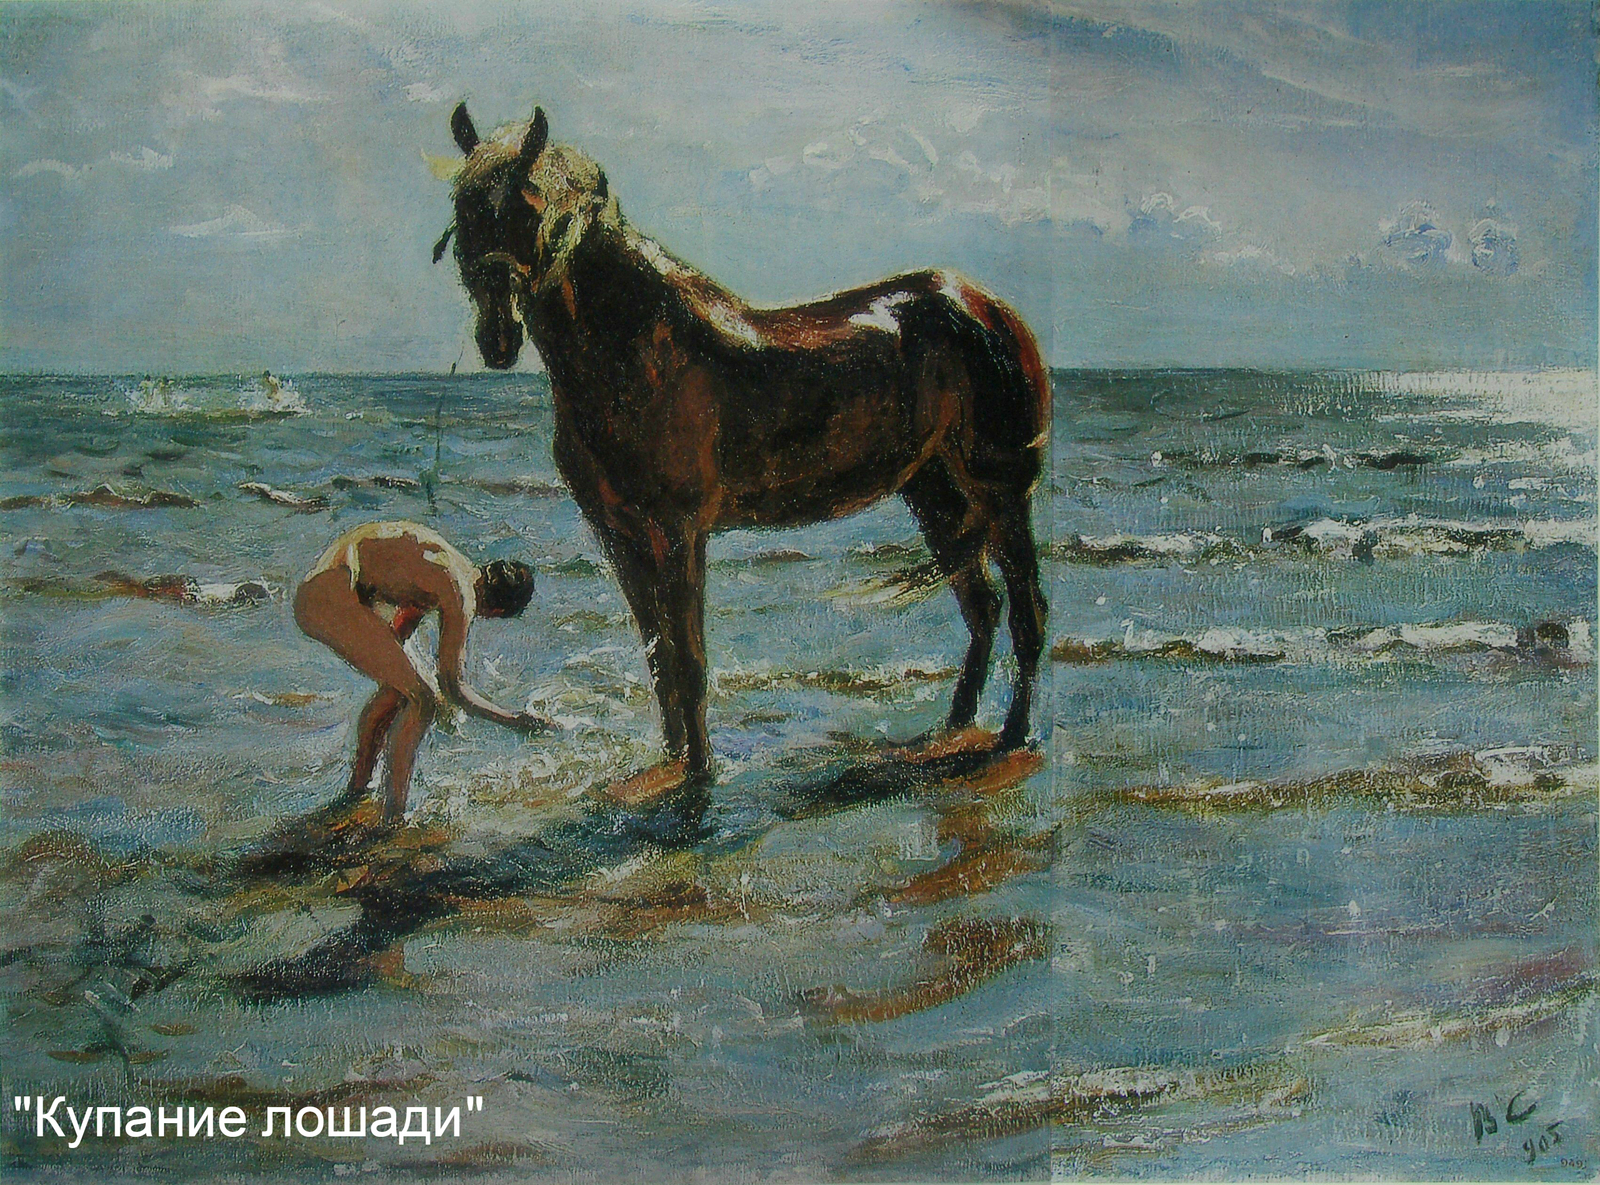 Serov - Artist, Serov, Painting, Art, Longpost, Valentin Serov